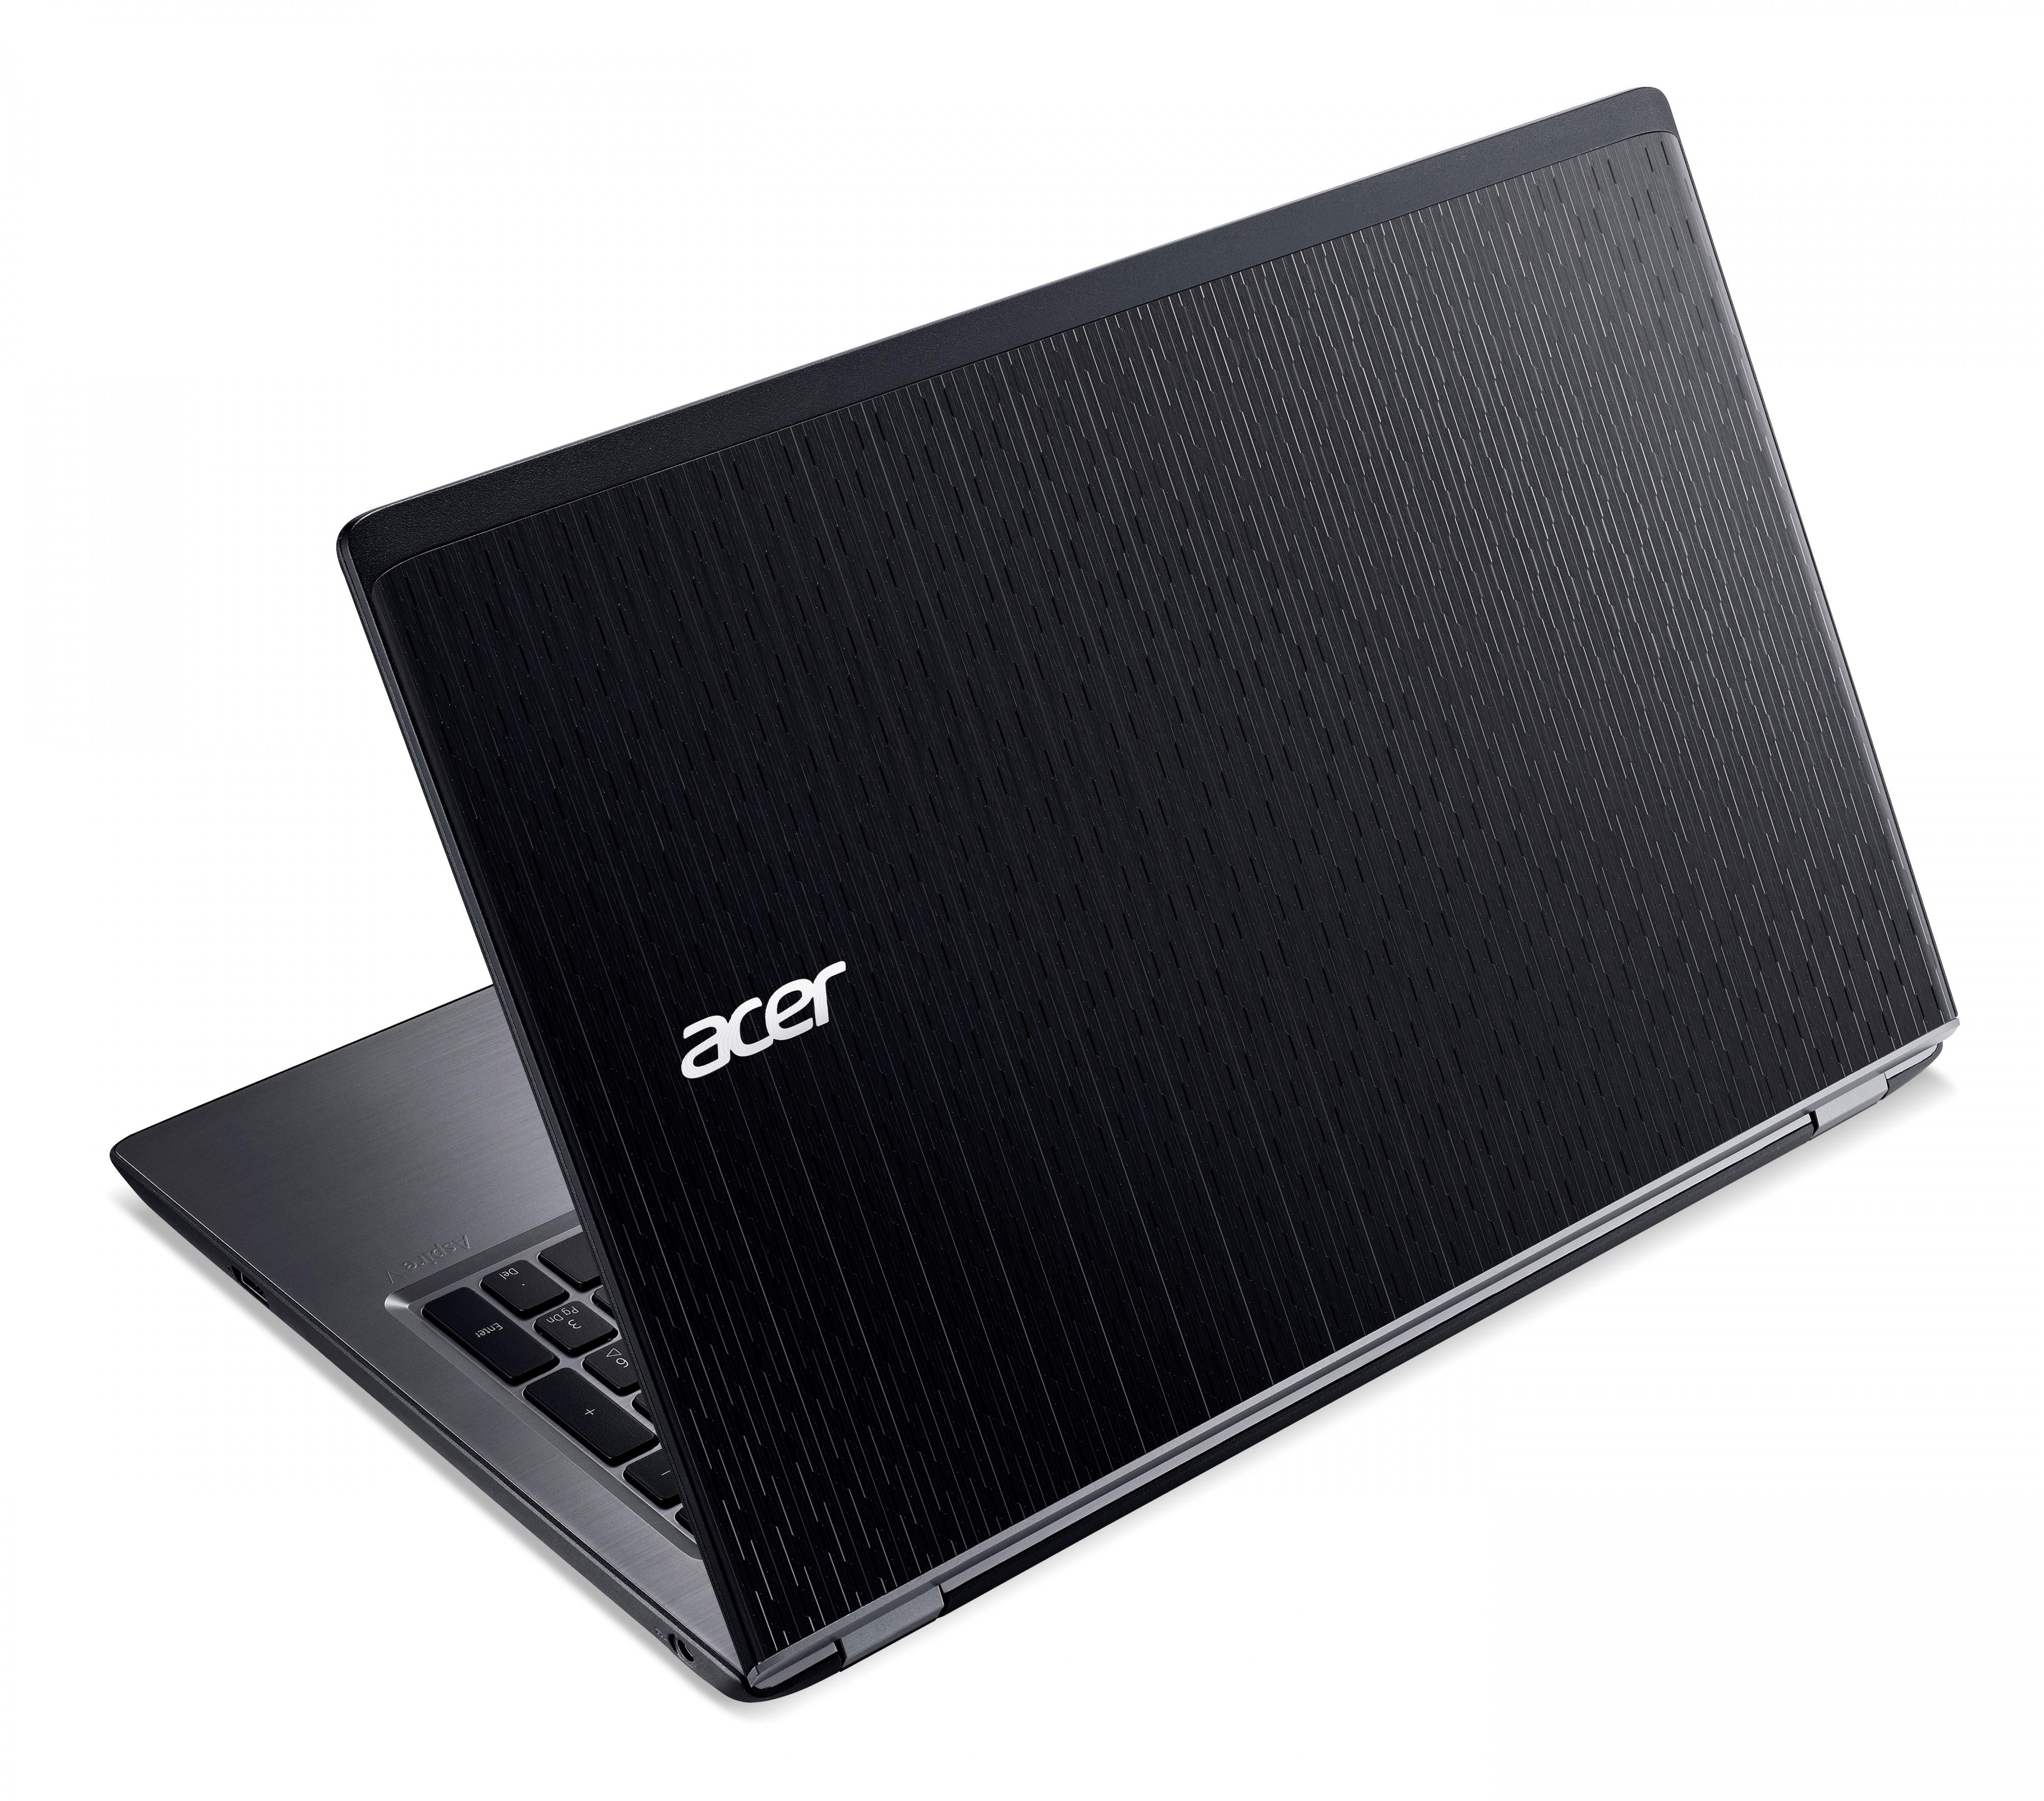   Acer Aspire V5-591G-59Y9 (NX.G66ER.007)  3